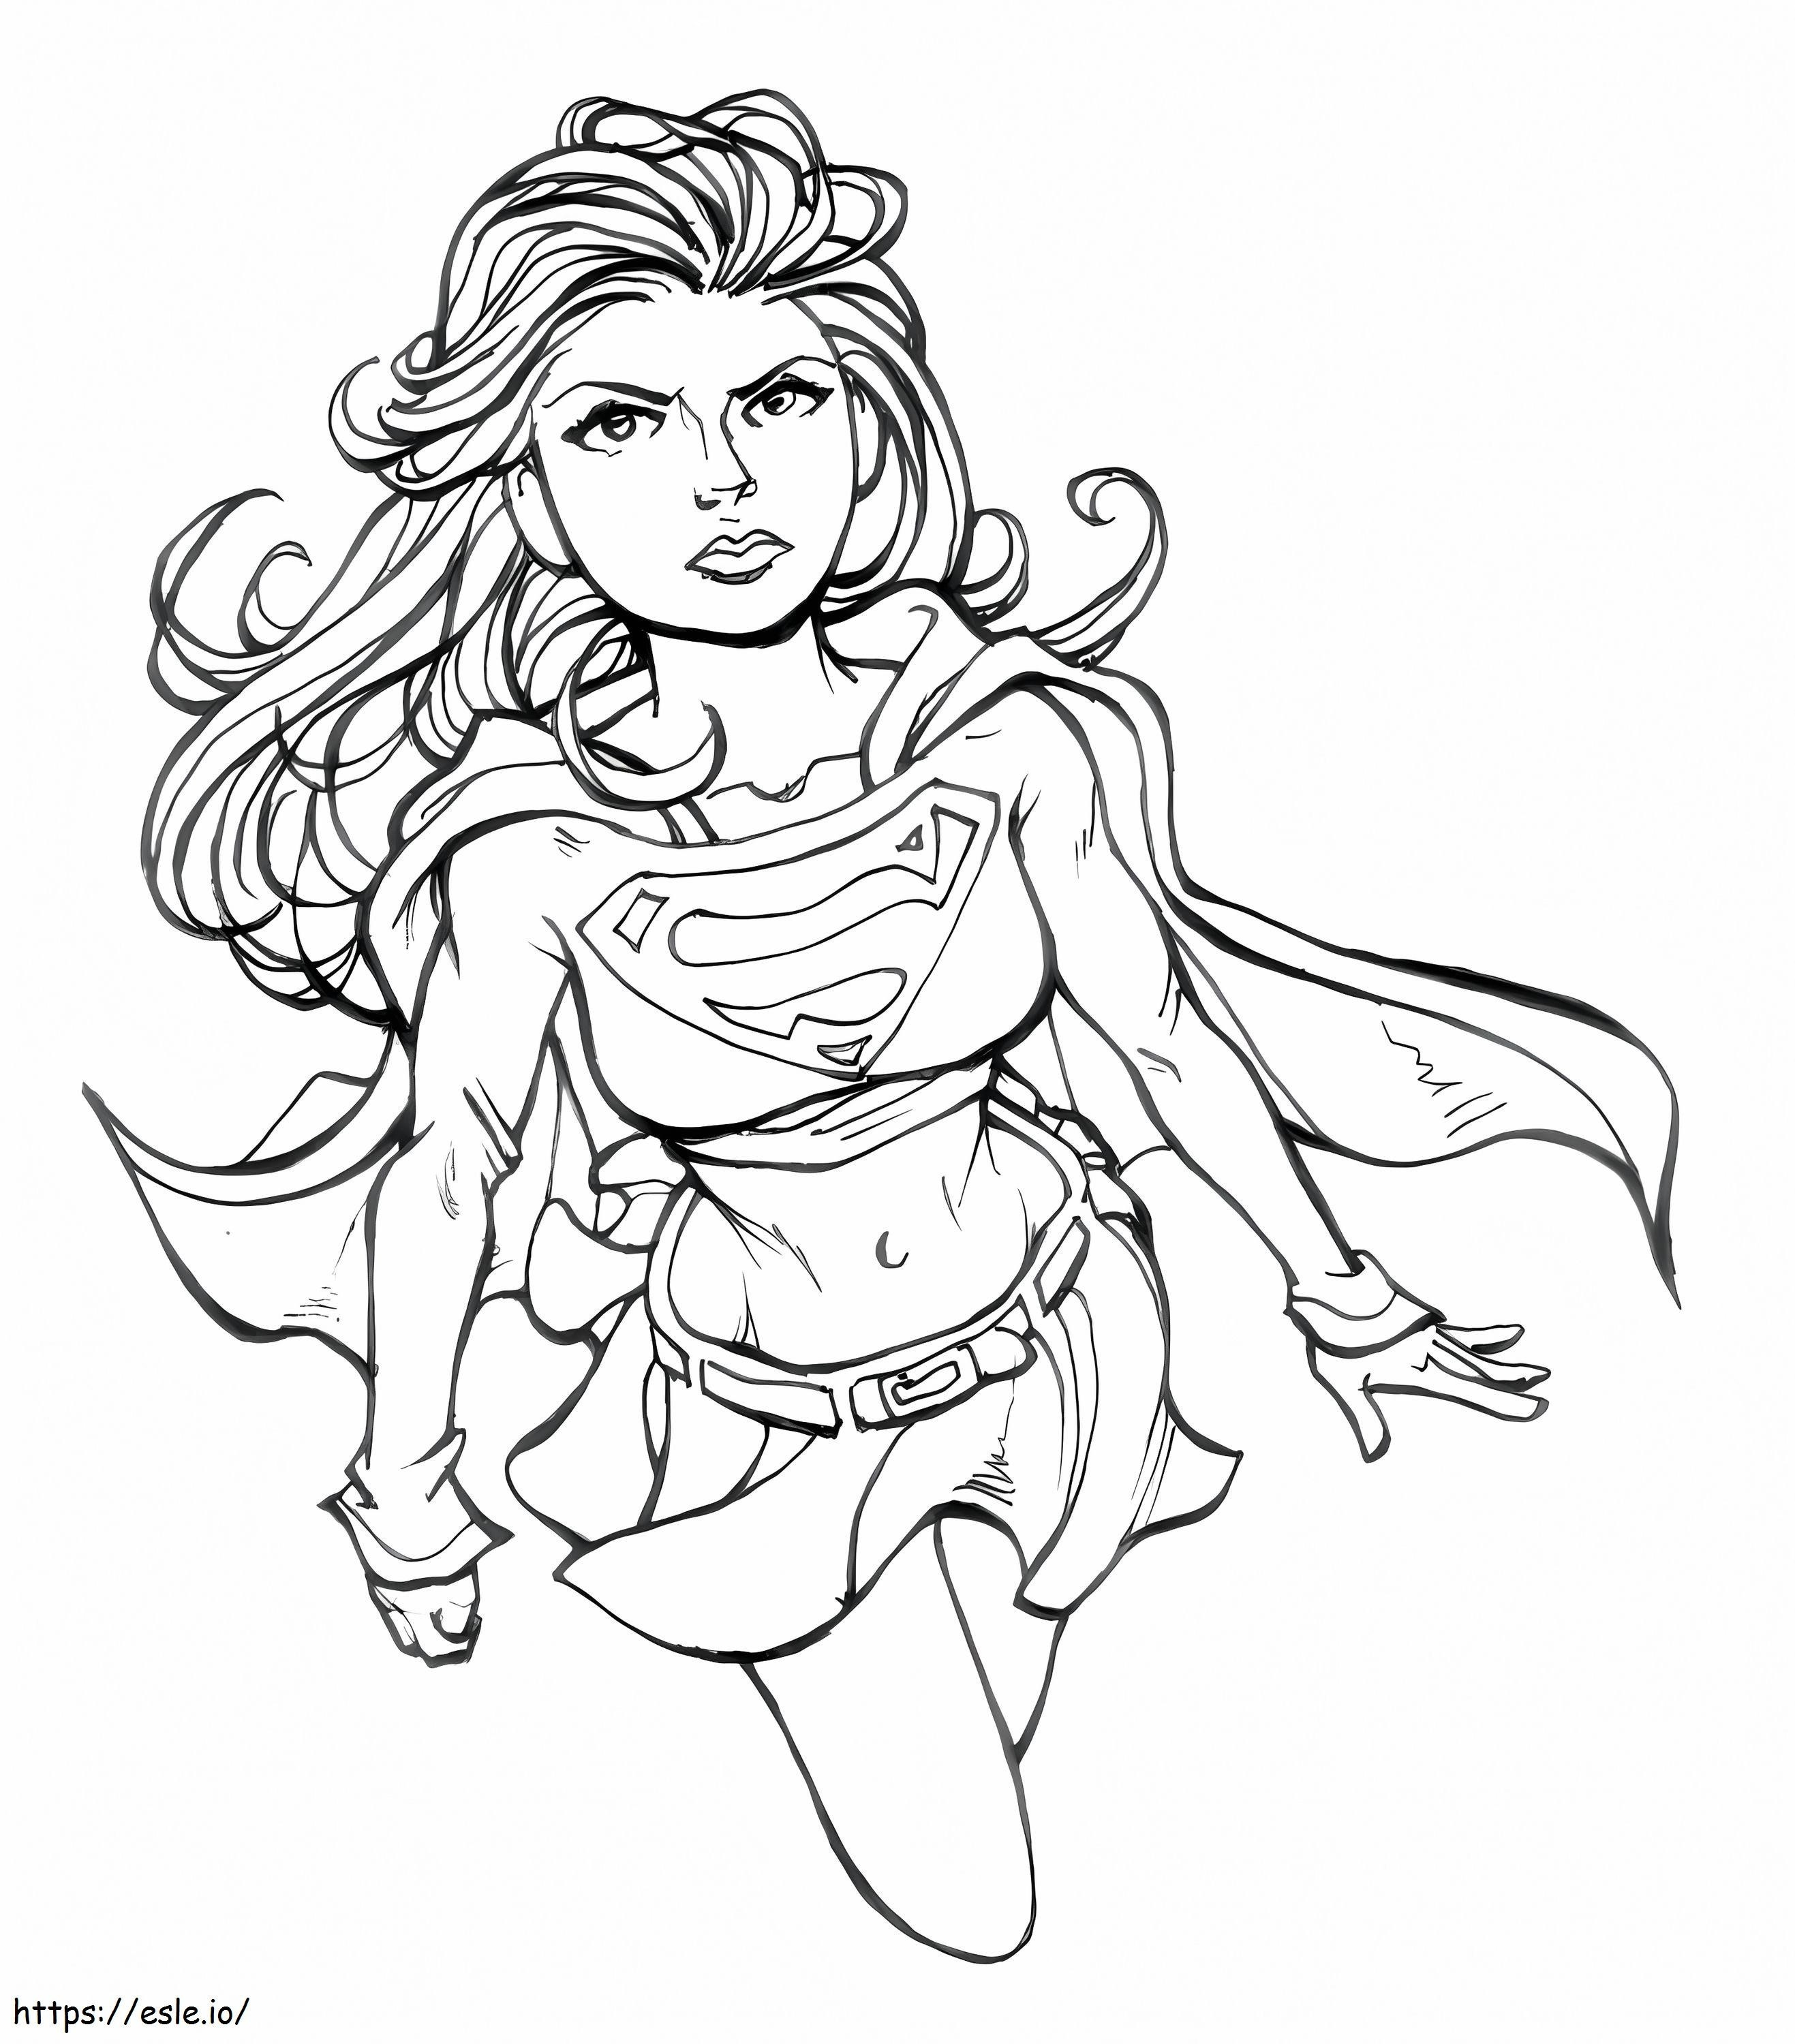 Wściekła Supergirl kolorowanka